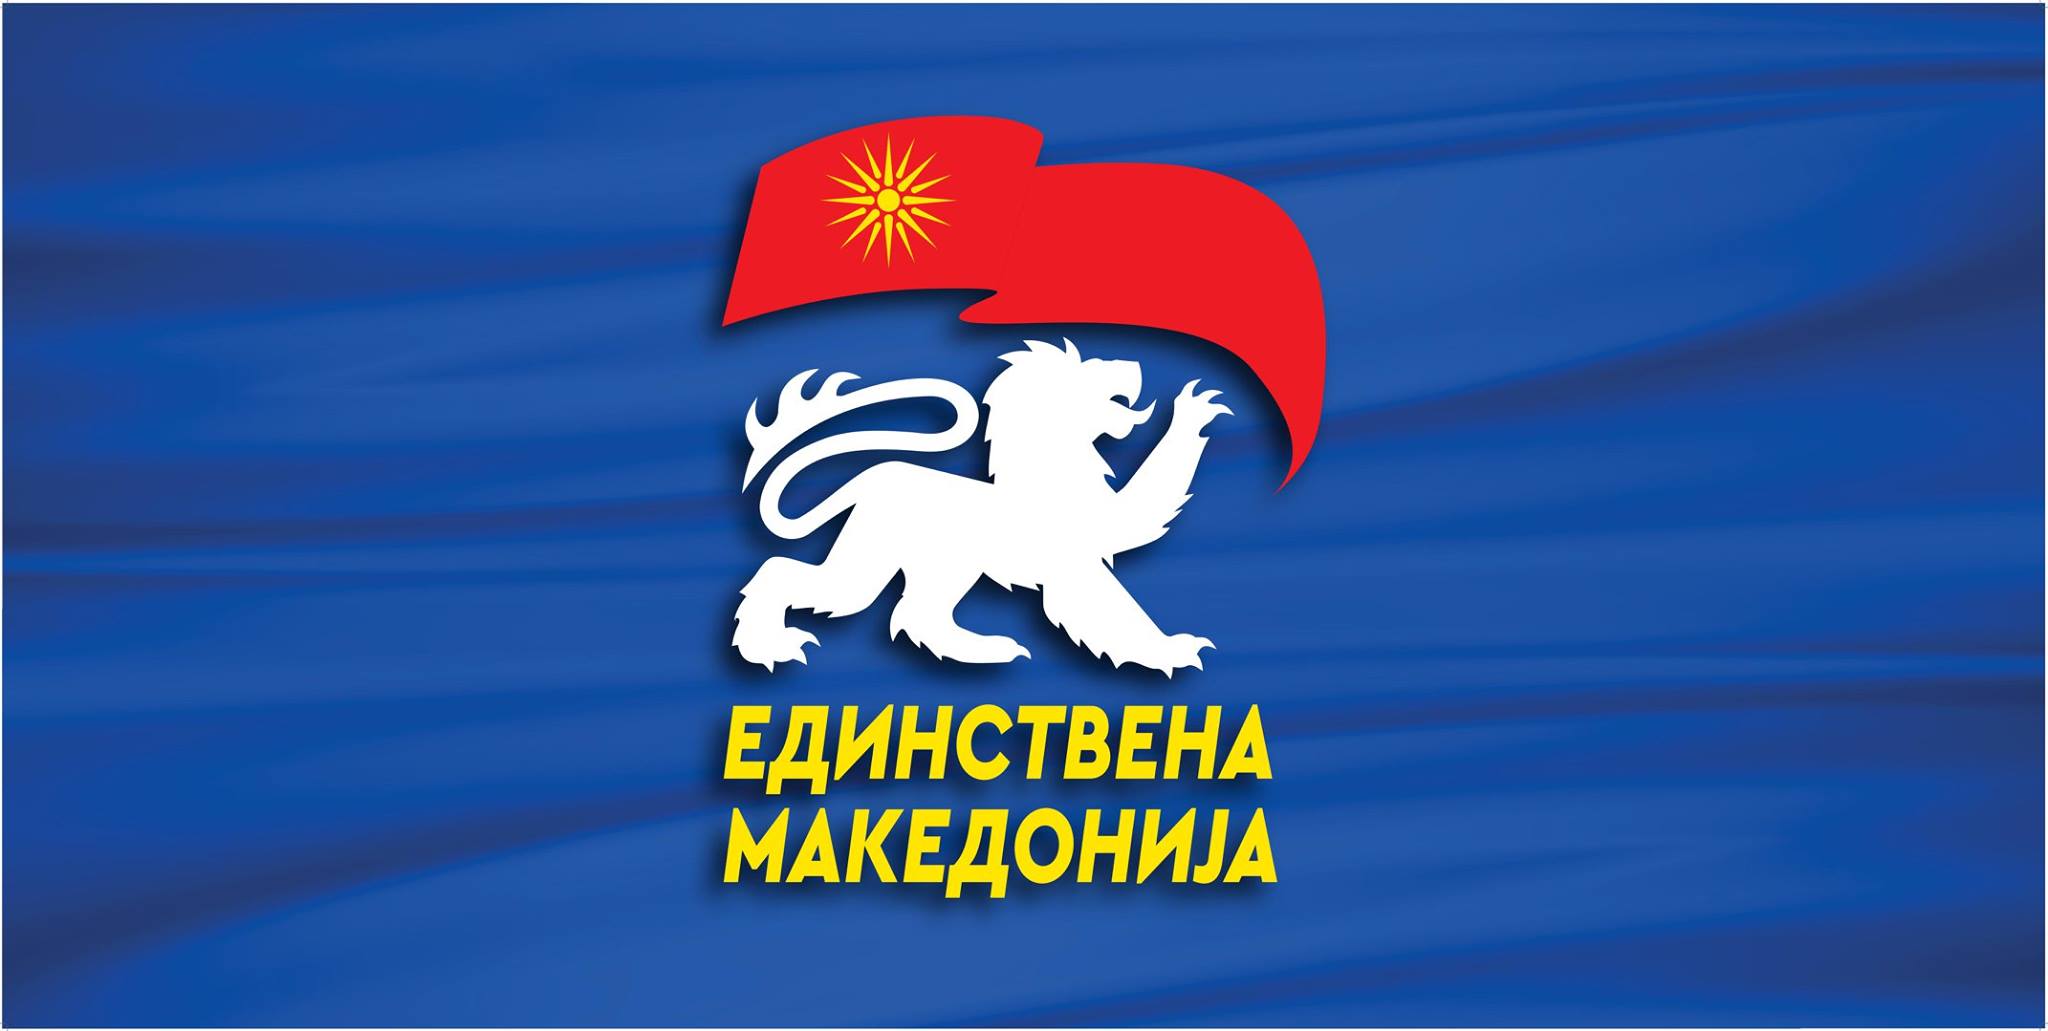 Единствена Македонија до Ковачевски по францускиот предлог: Ајде на избори и народот нека одлучи за иднината на Македонија